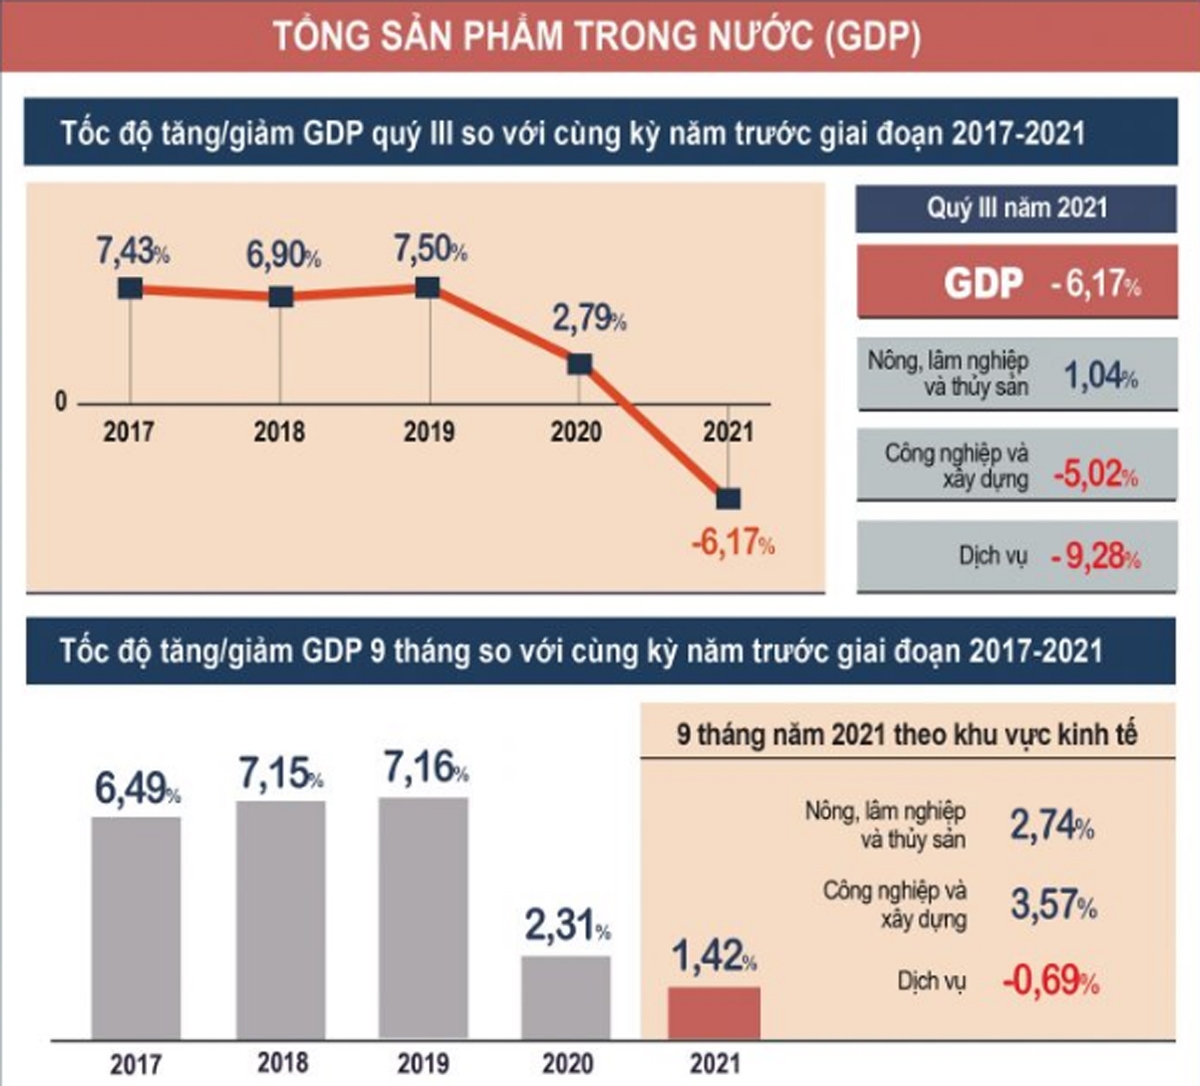 ViMoney - VEPR: Tăng trưởng GDP năm 2021 của Việt Nam đạt 2,5% với kịch bản tốt nhất - GDP quý III 2021 so với cùng kỳ năm trước từ 2017 - 2020